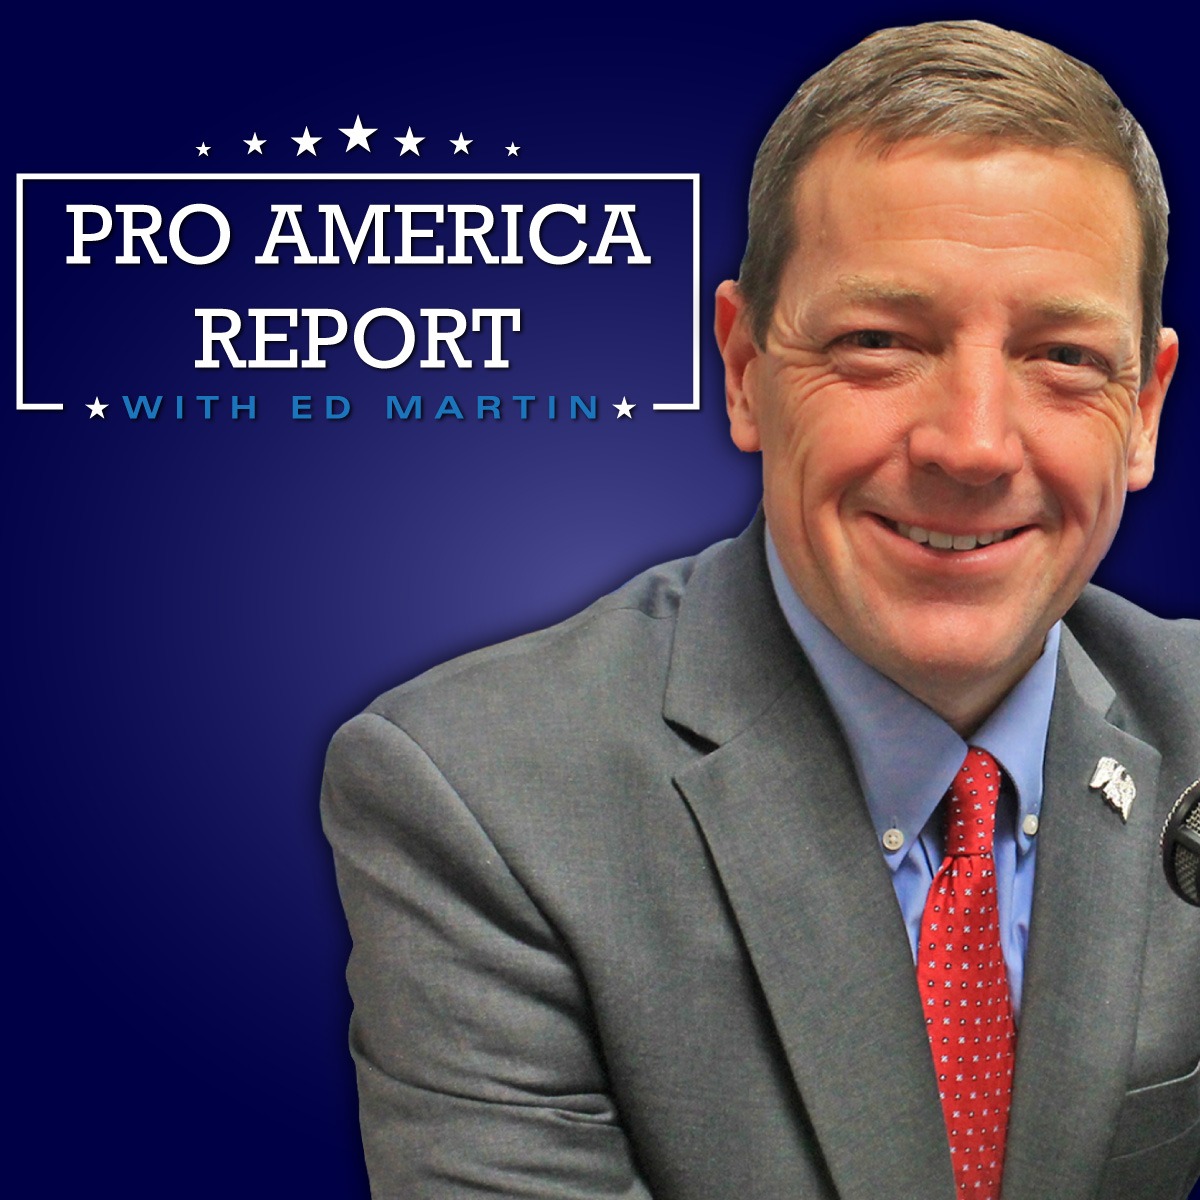 The Pro America Report Ed Martin 06.09.2020